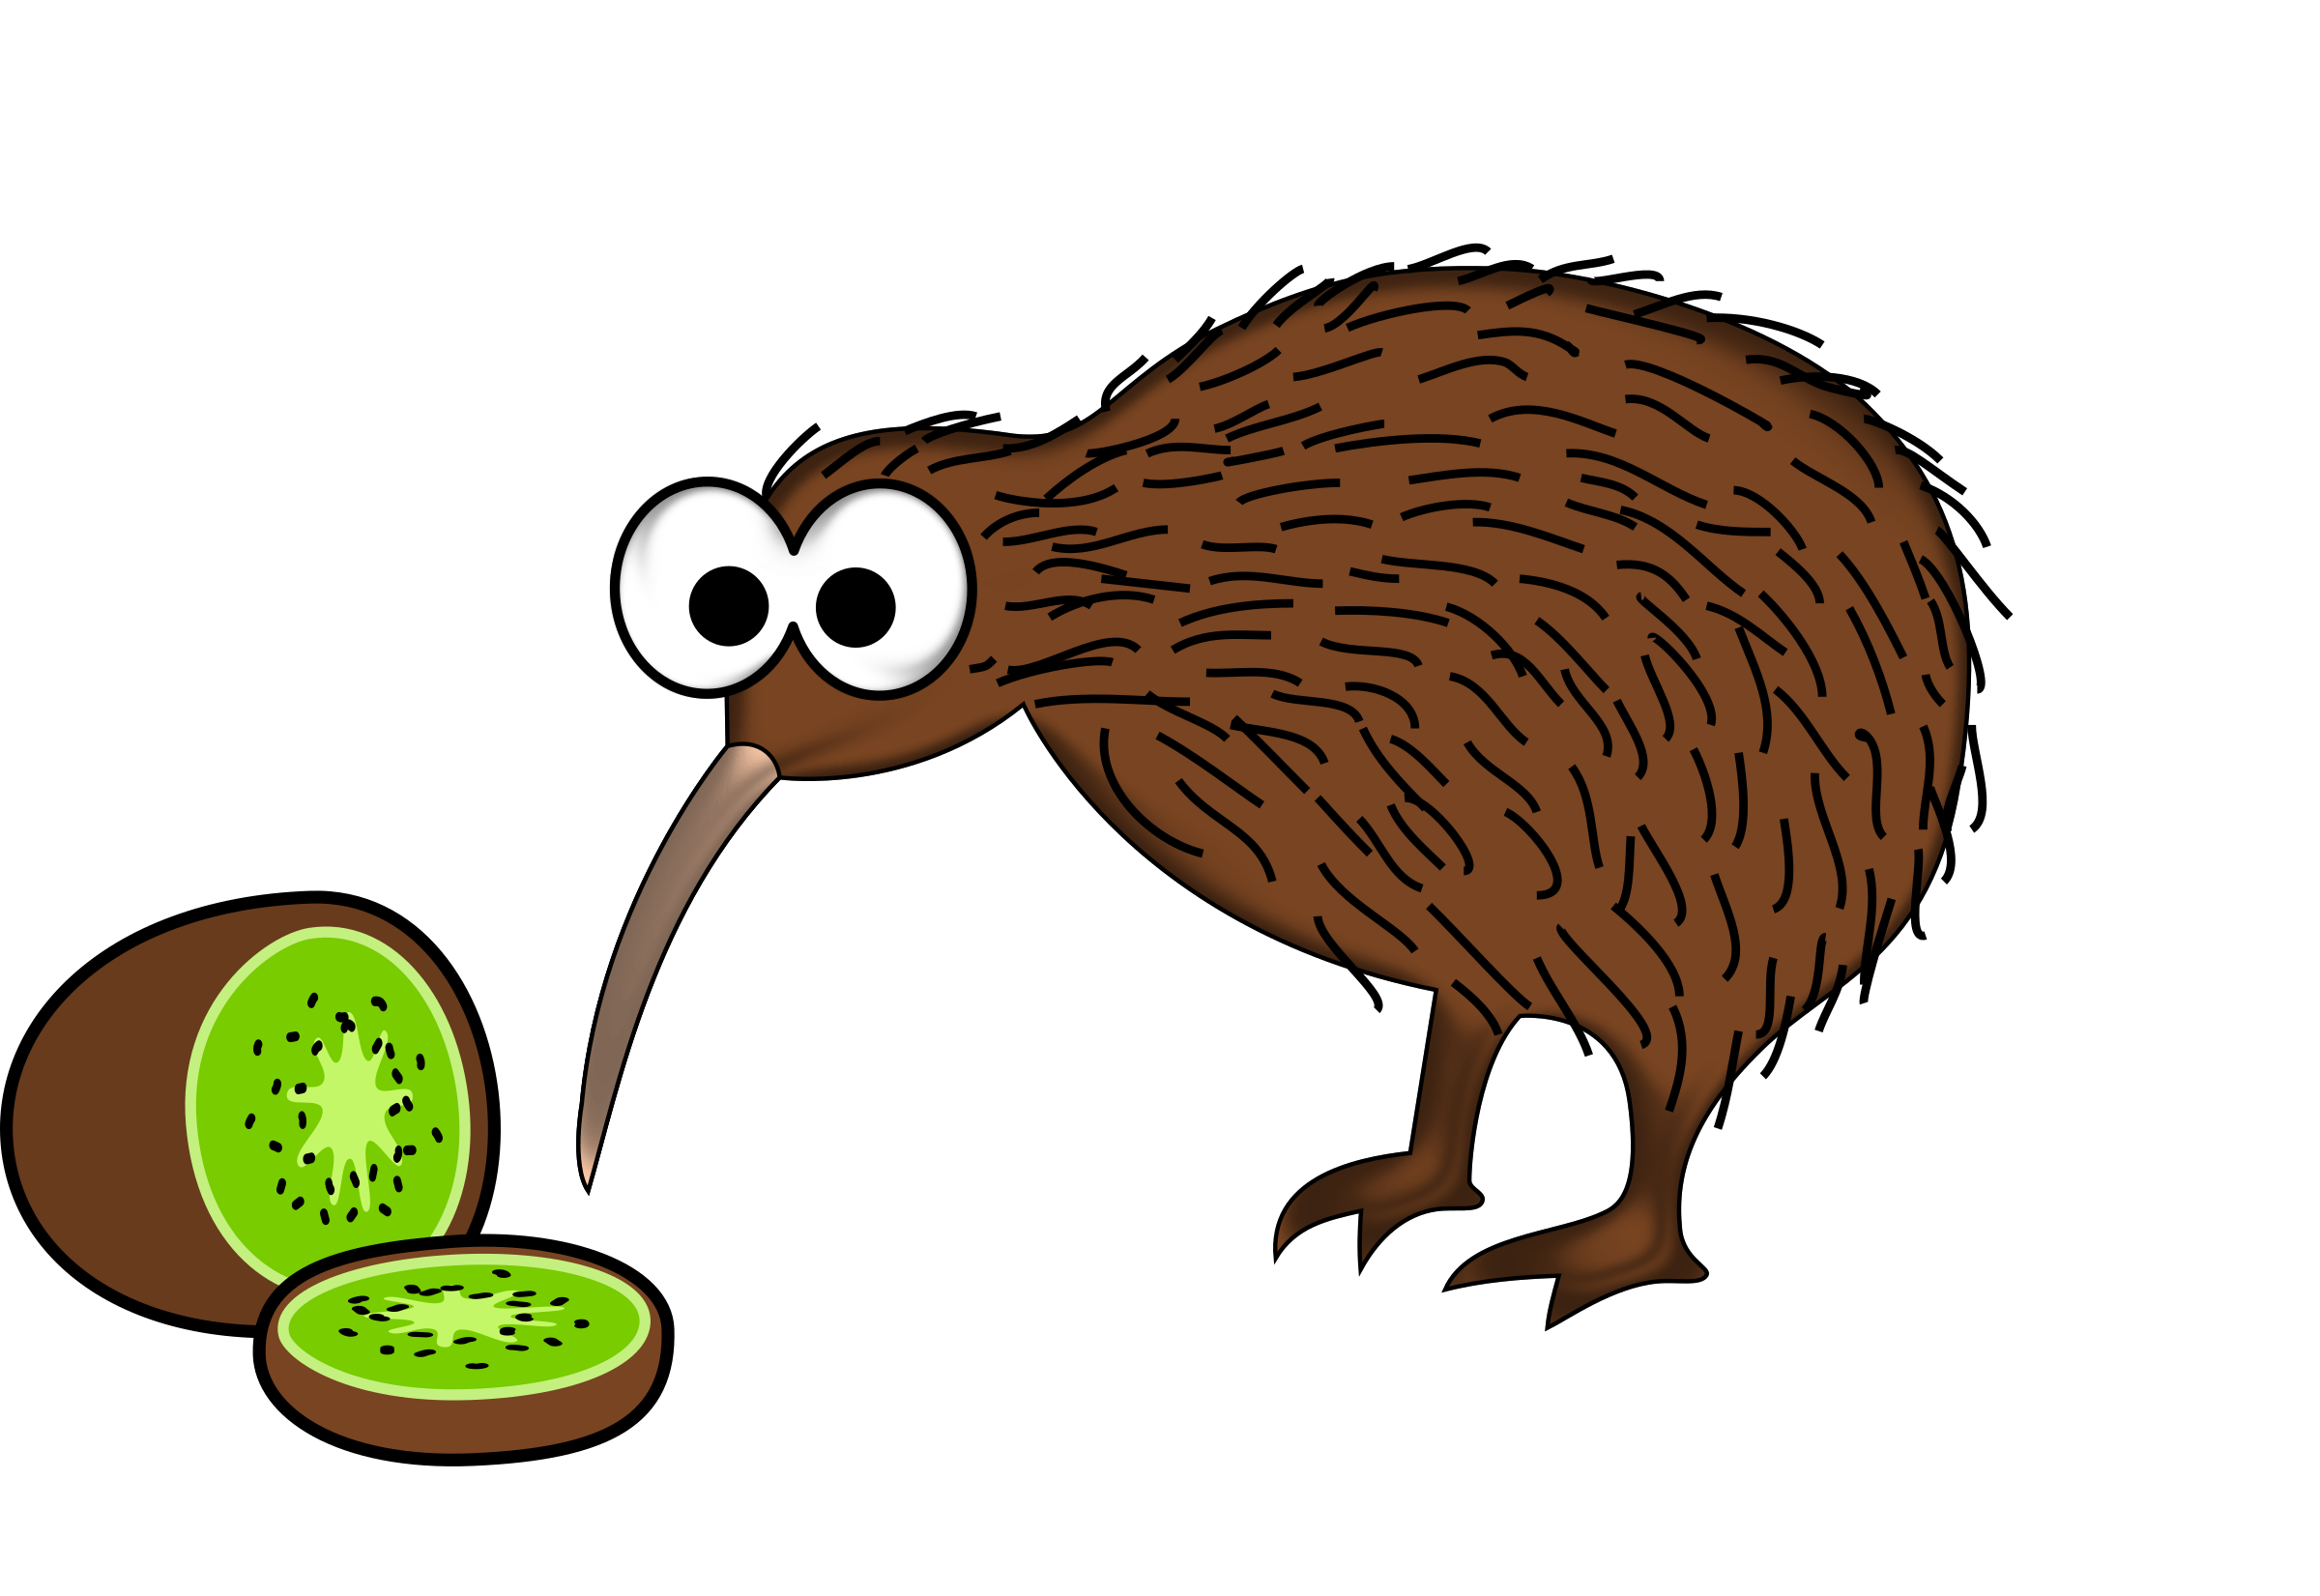 Download PNG image - Kiwi Bird 